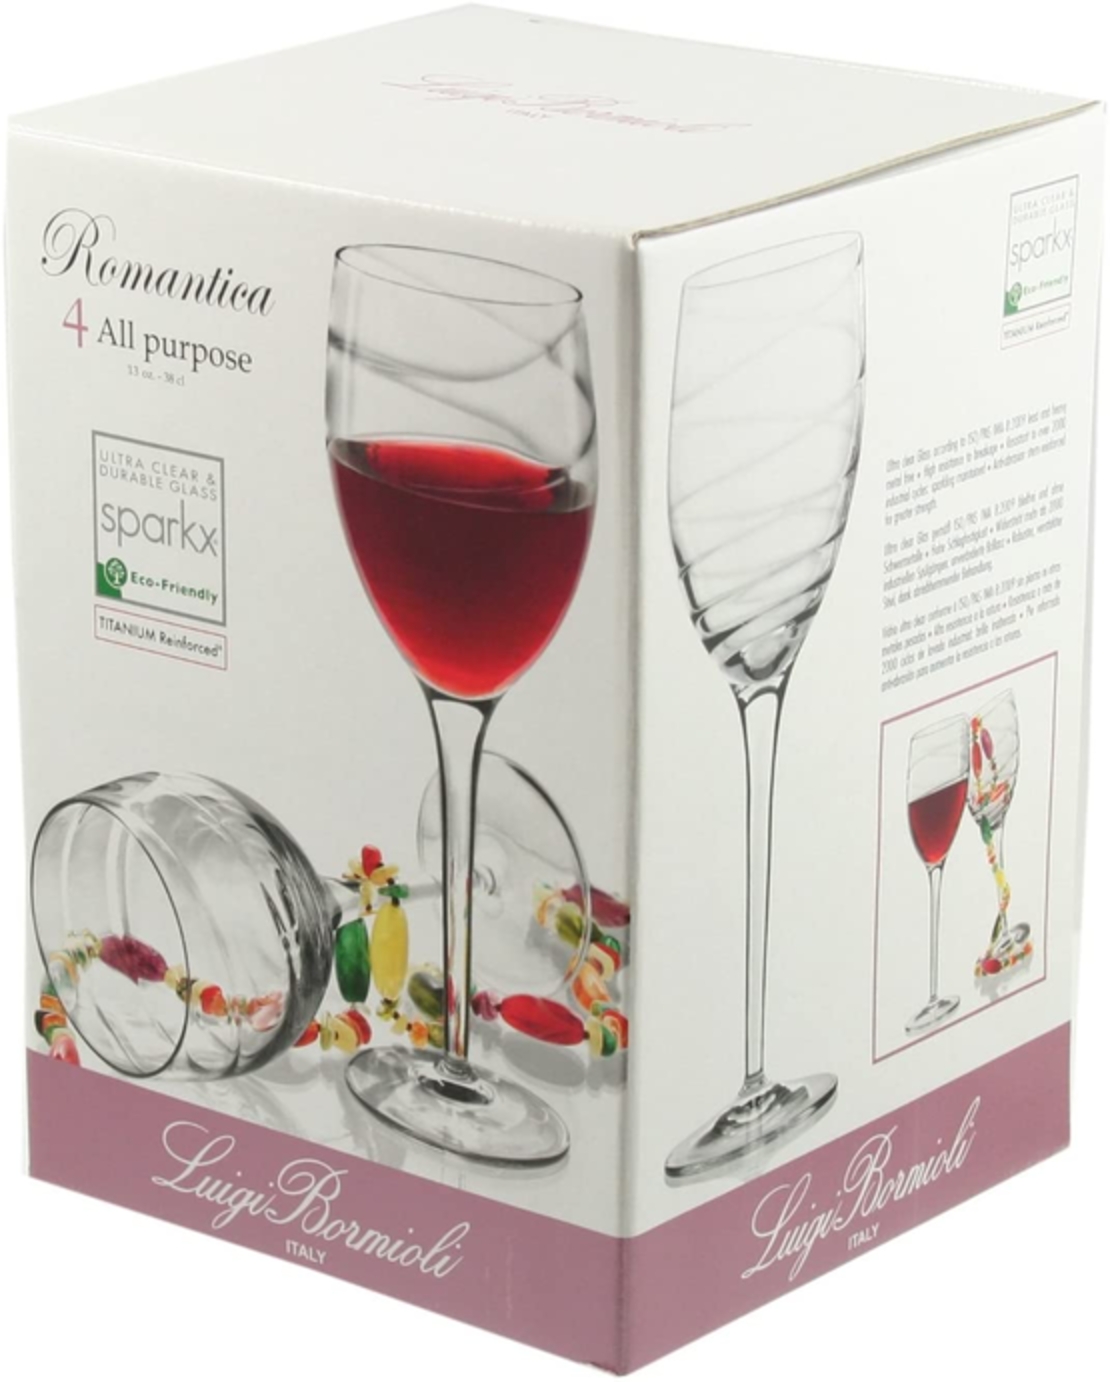 Romantica all purpose 380 ml wine glass luigi bromioli